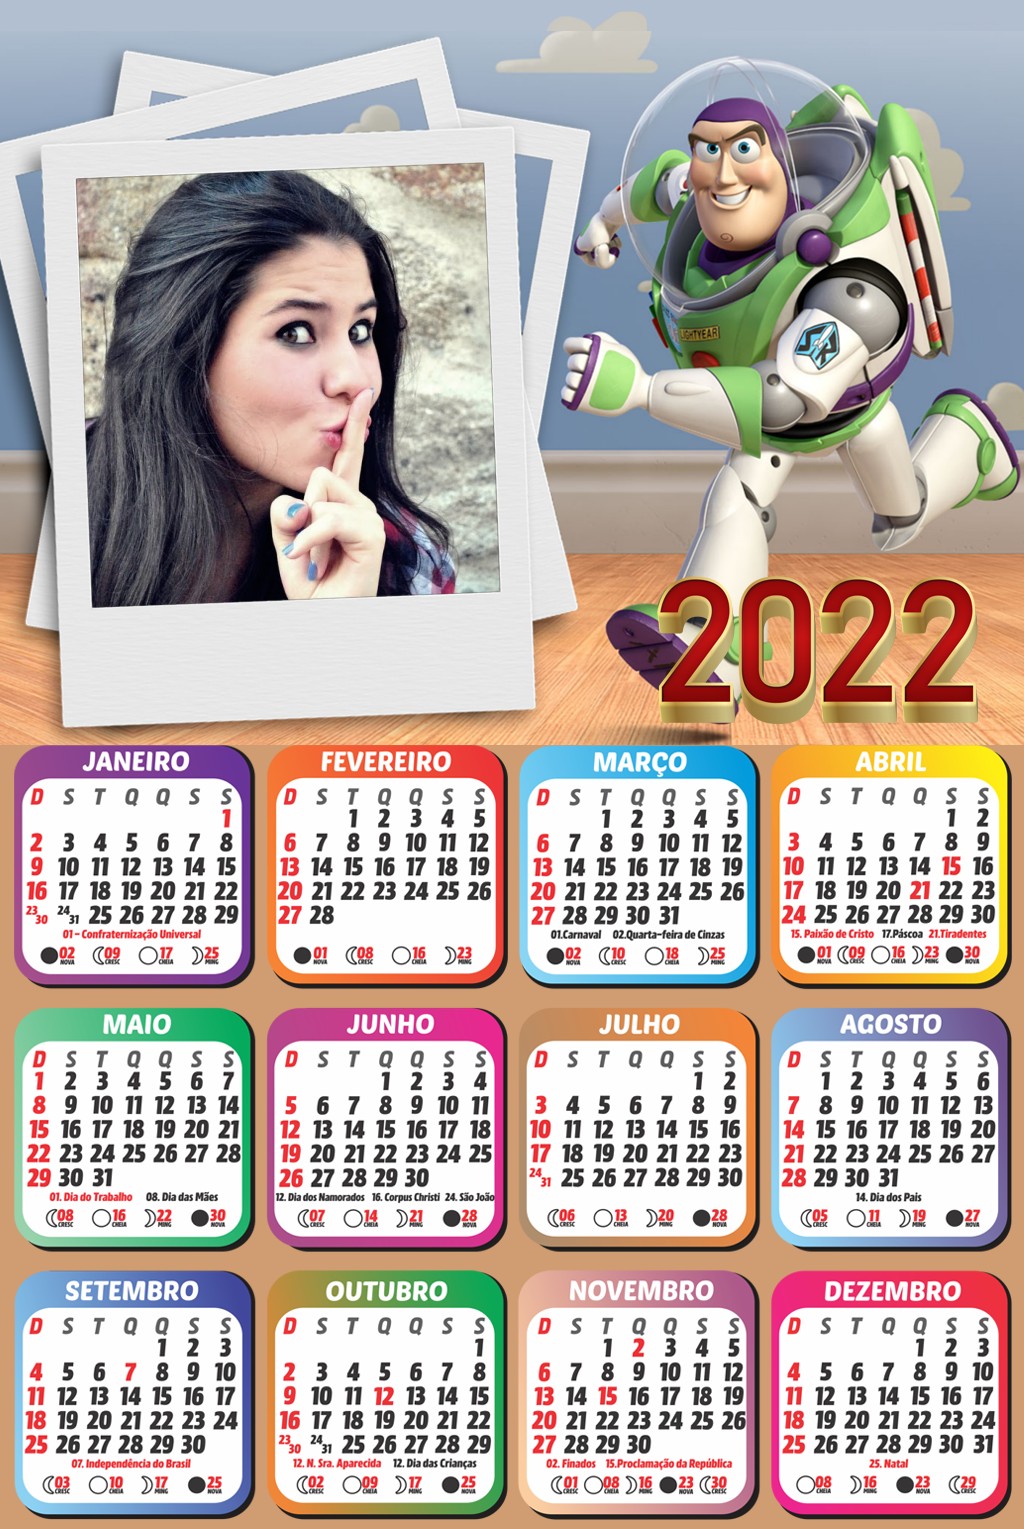 montar-foto-em-calendario-2022-buzz-lightyear